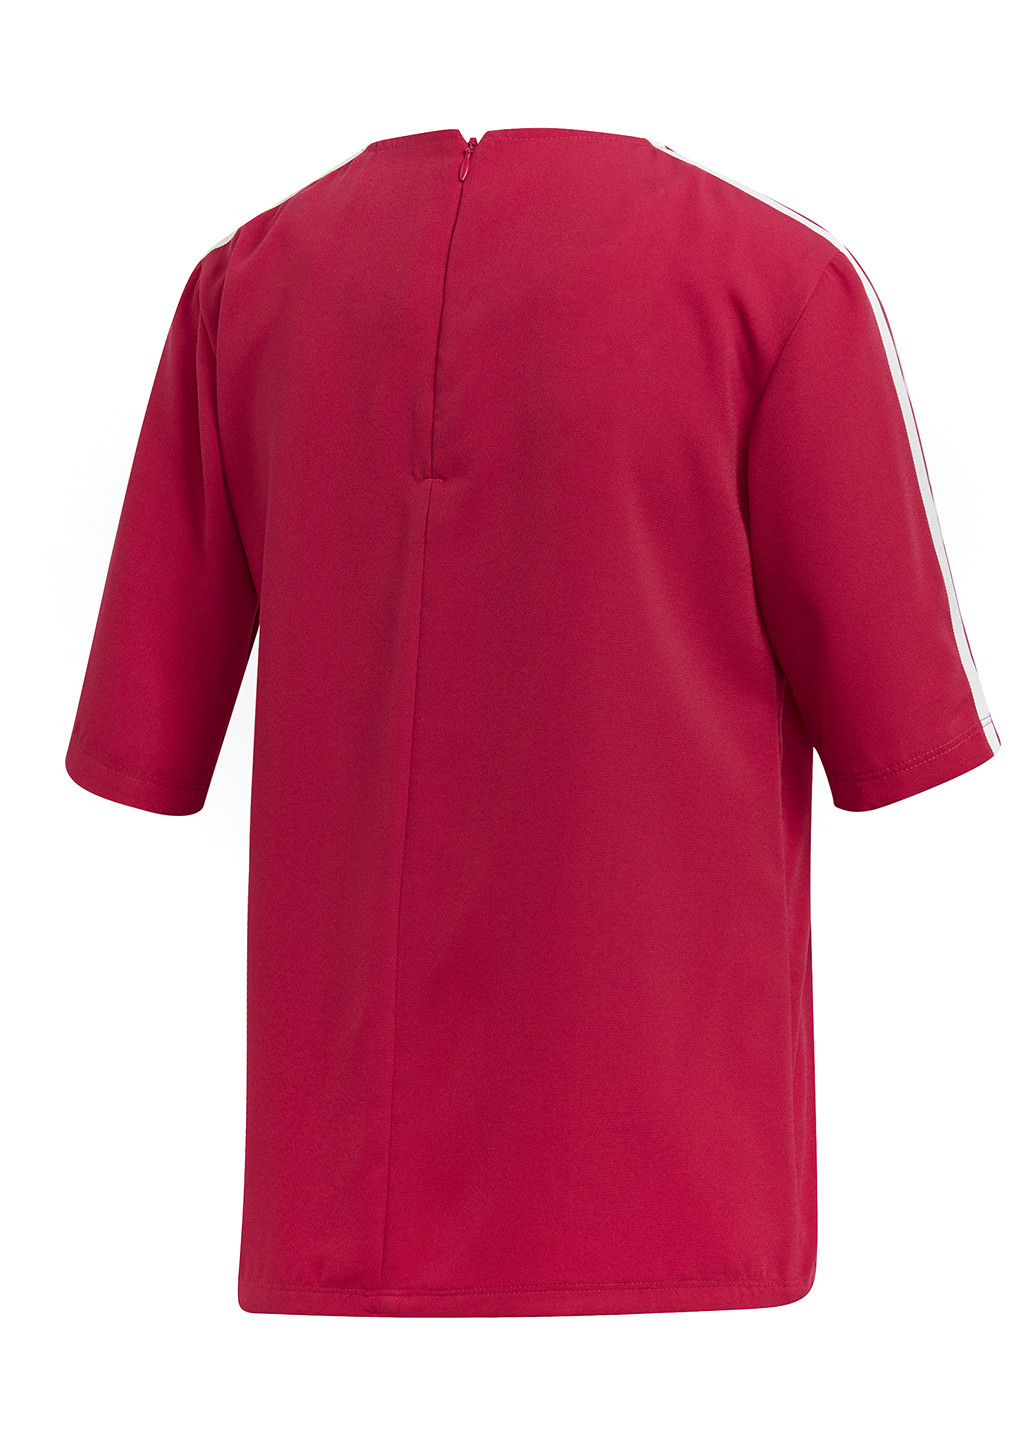 Красная летняя футболка с коротким рукавом adidas